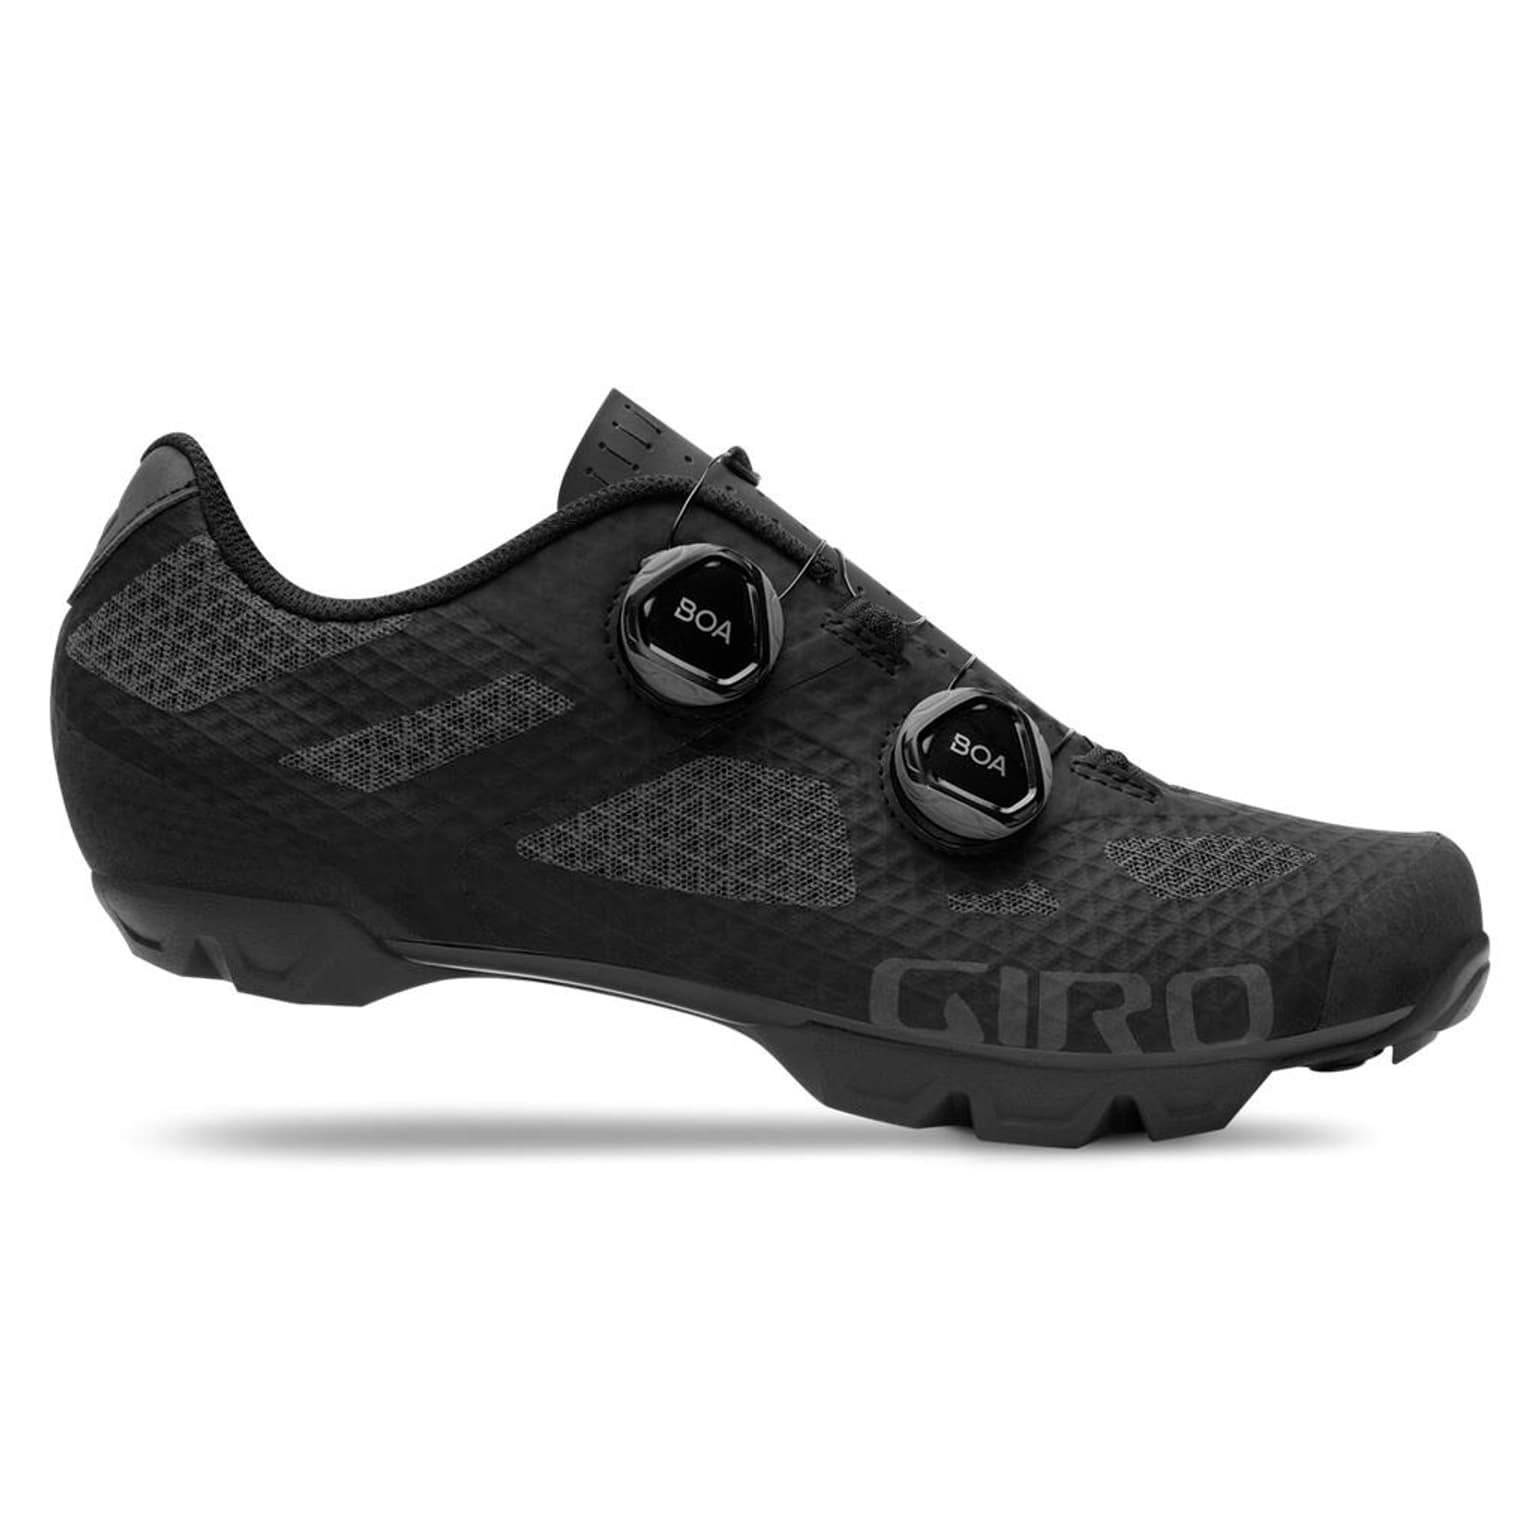 Giro Giro Sector W Shoe Chaussures de cyclisme noir 1